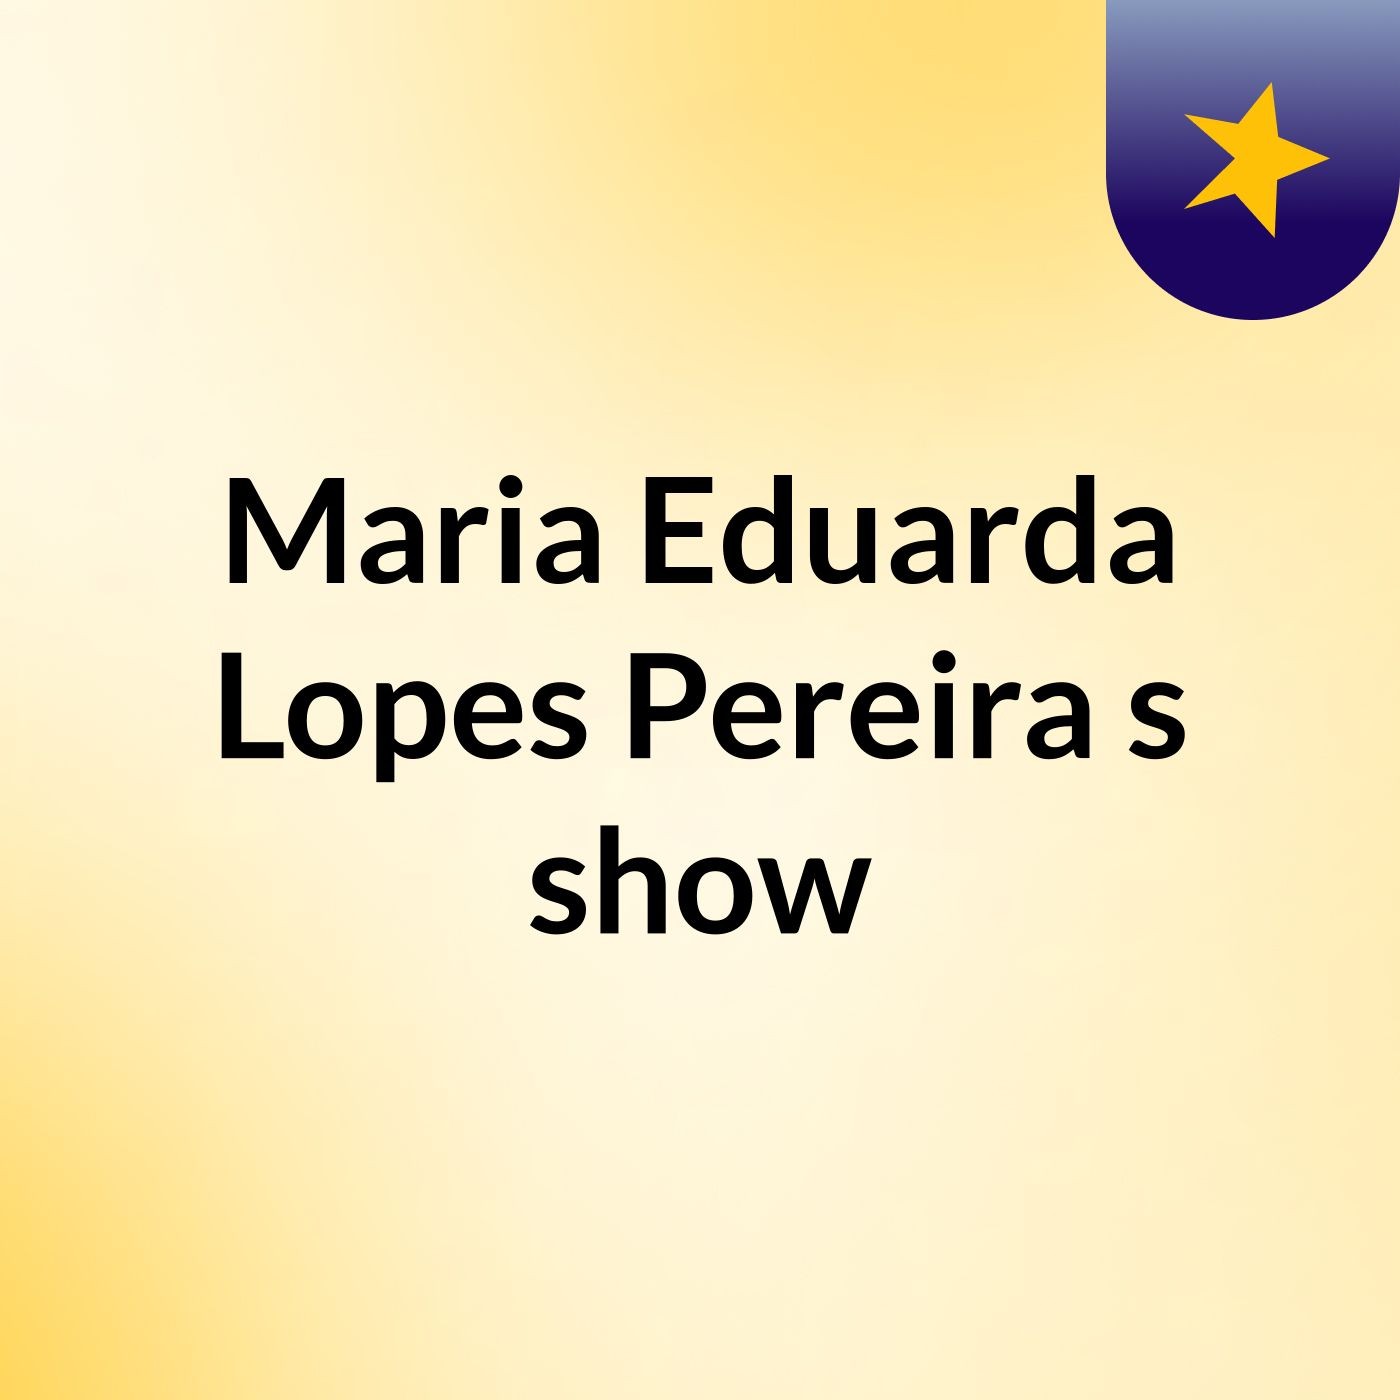 Maria Eduarda Lopes Pereira's show